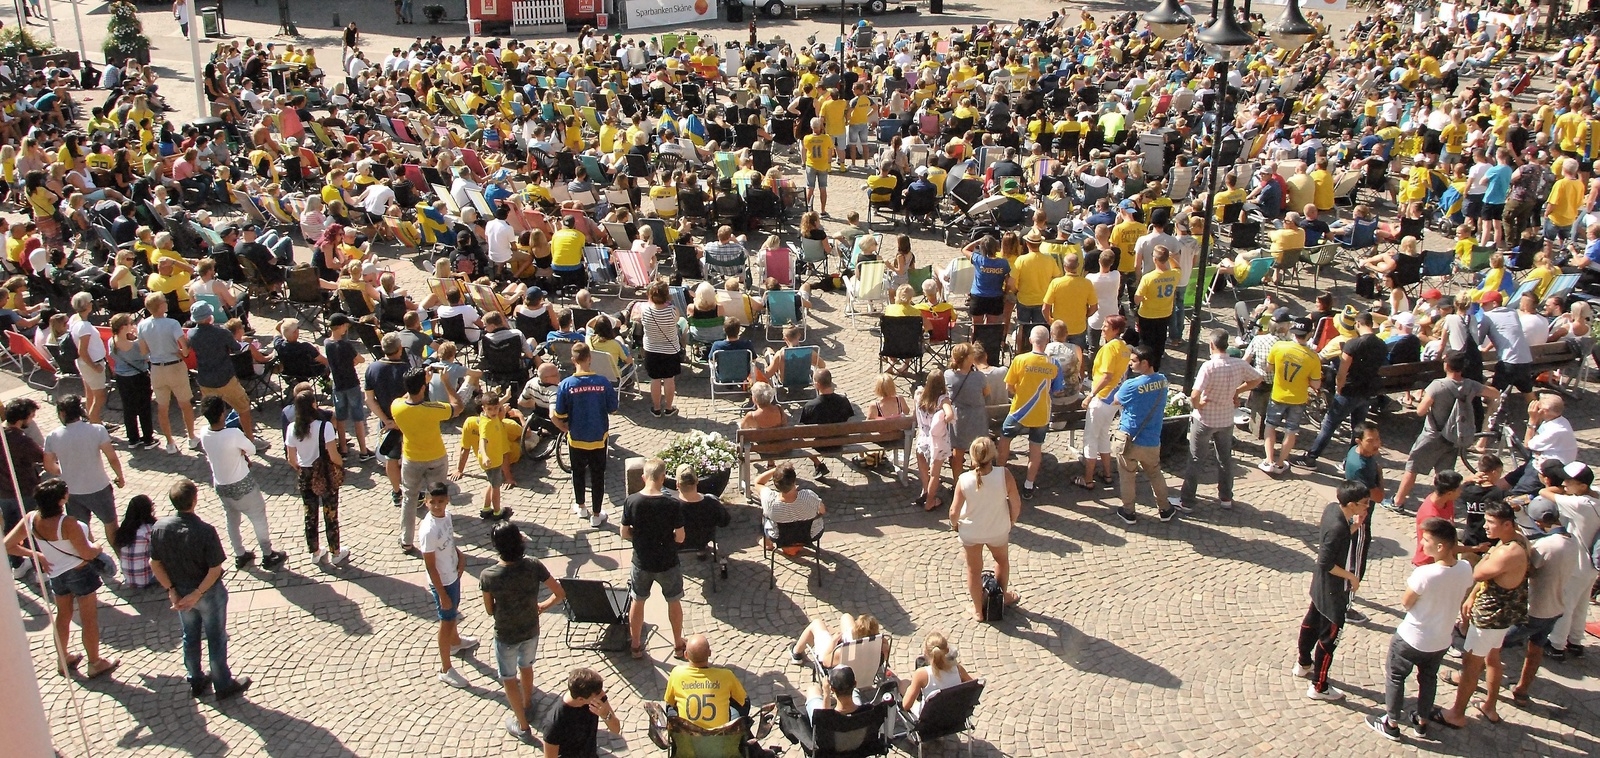 Många hade tagit sig till Stortorget för att se Sverige möta England på storbildsskärm i Hässleholm.
foto: bella Bryngelson